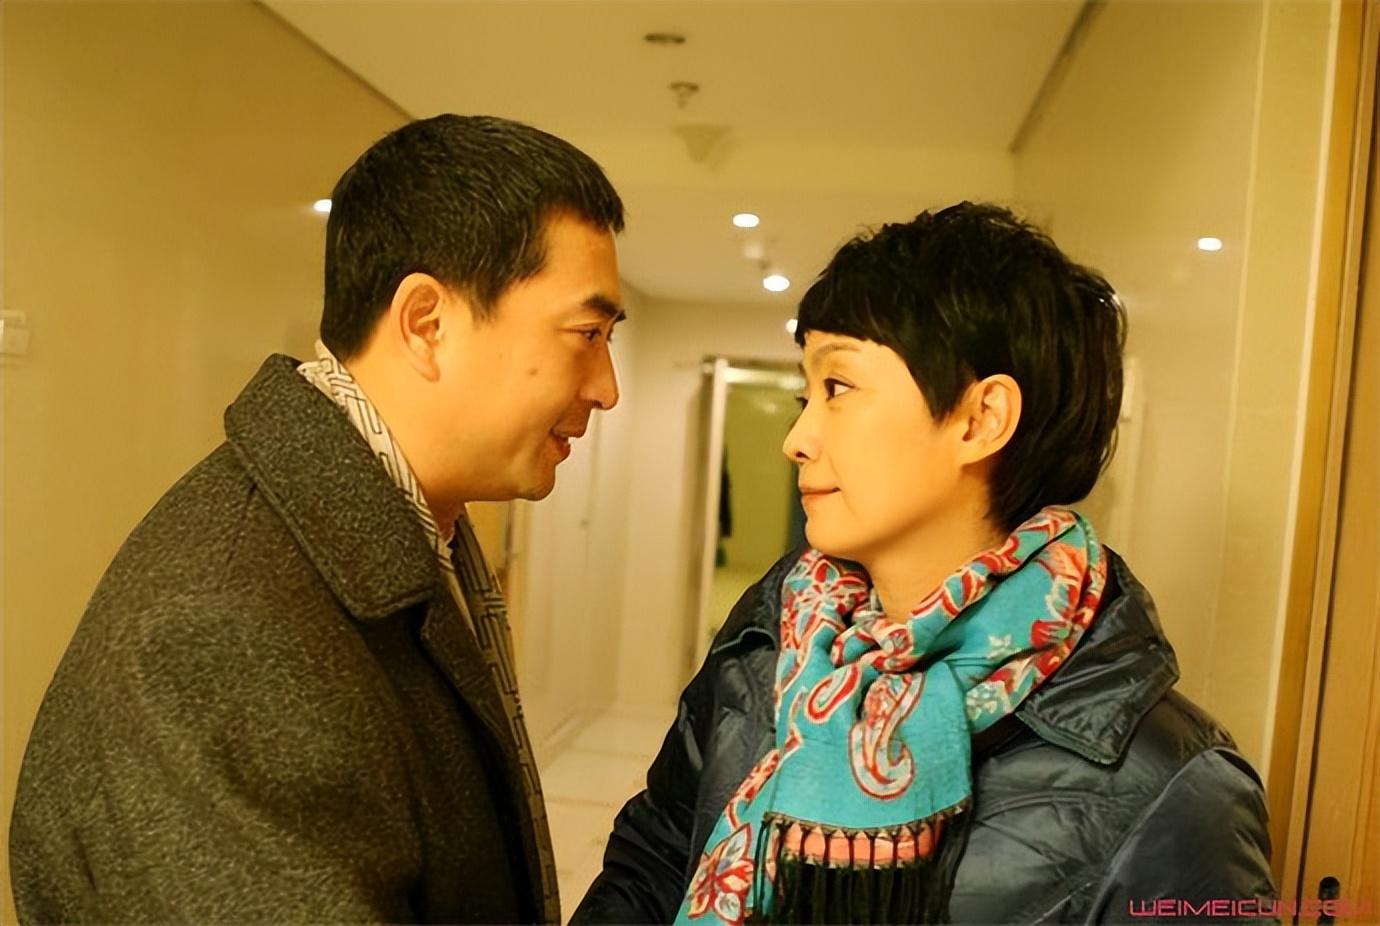 回顾王海燕嫁演员张嘉益41岁当妈也幸福丈夫打麻将让她很烦恼